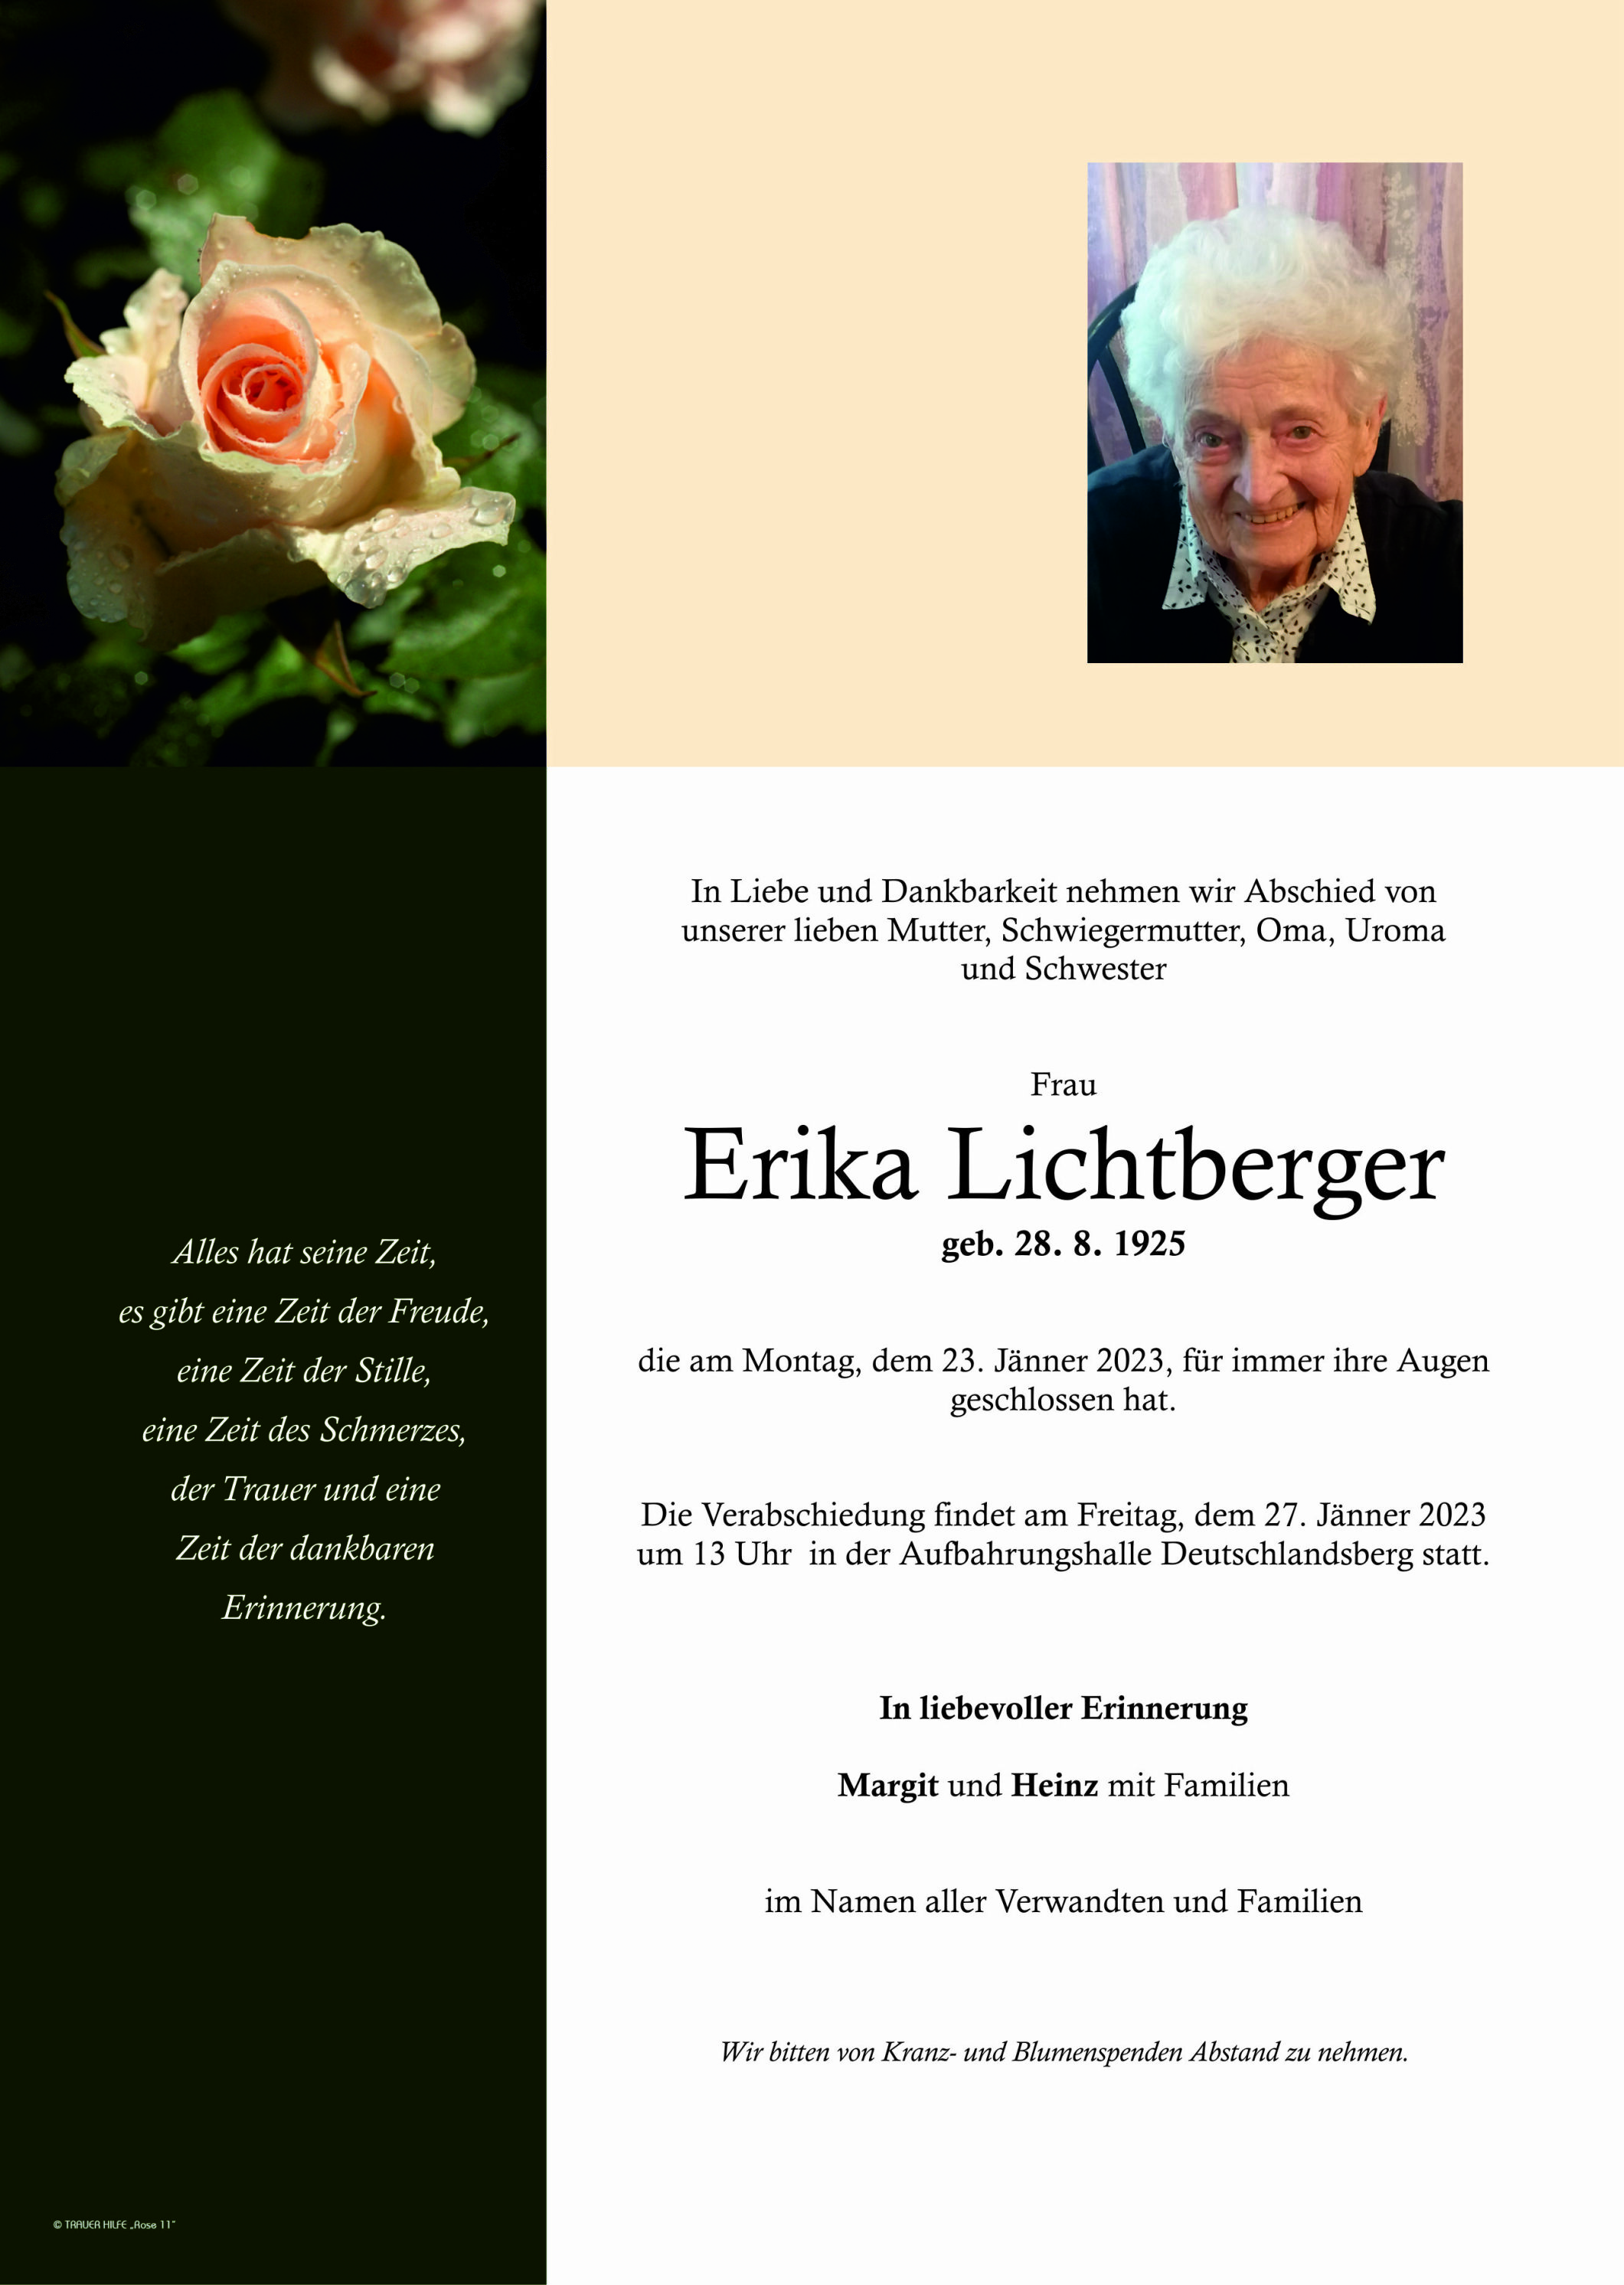 Erika Lichtberger